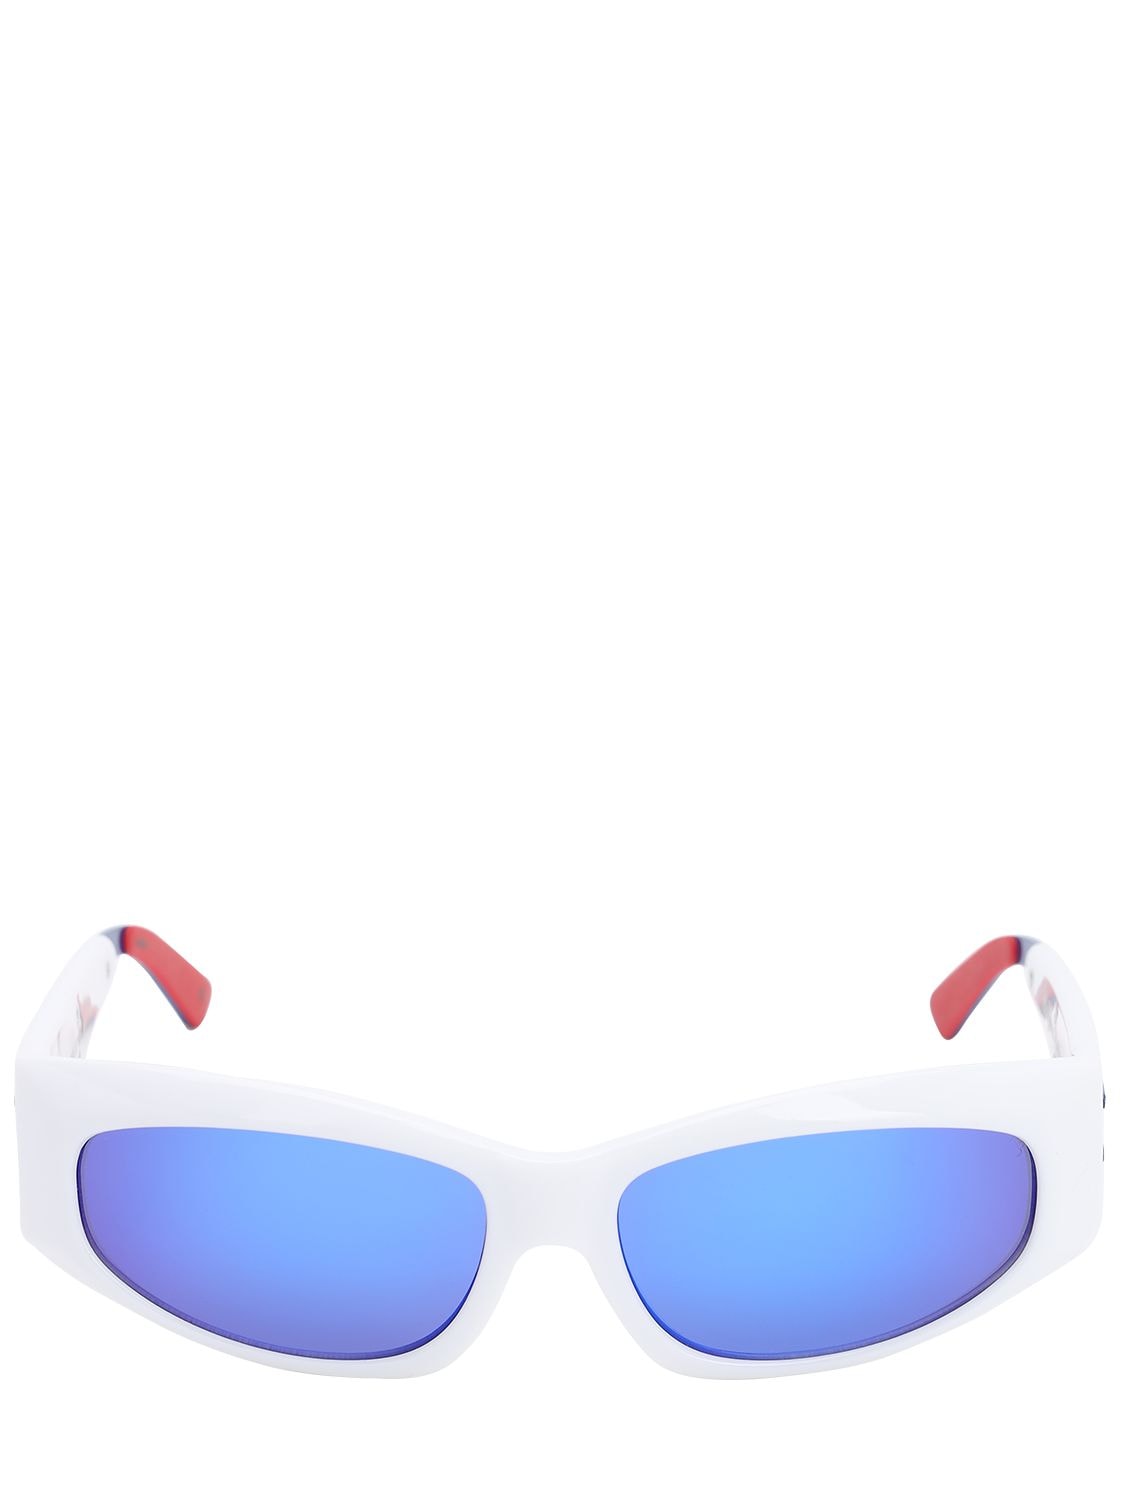 Le Specs Adam Selman The Edge Sunglasses In White,blue